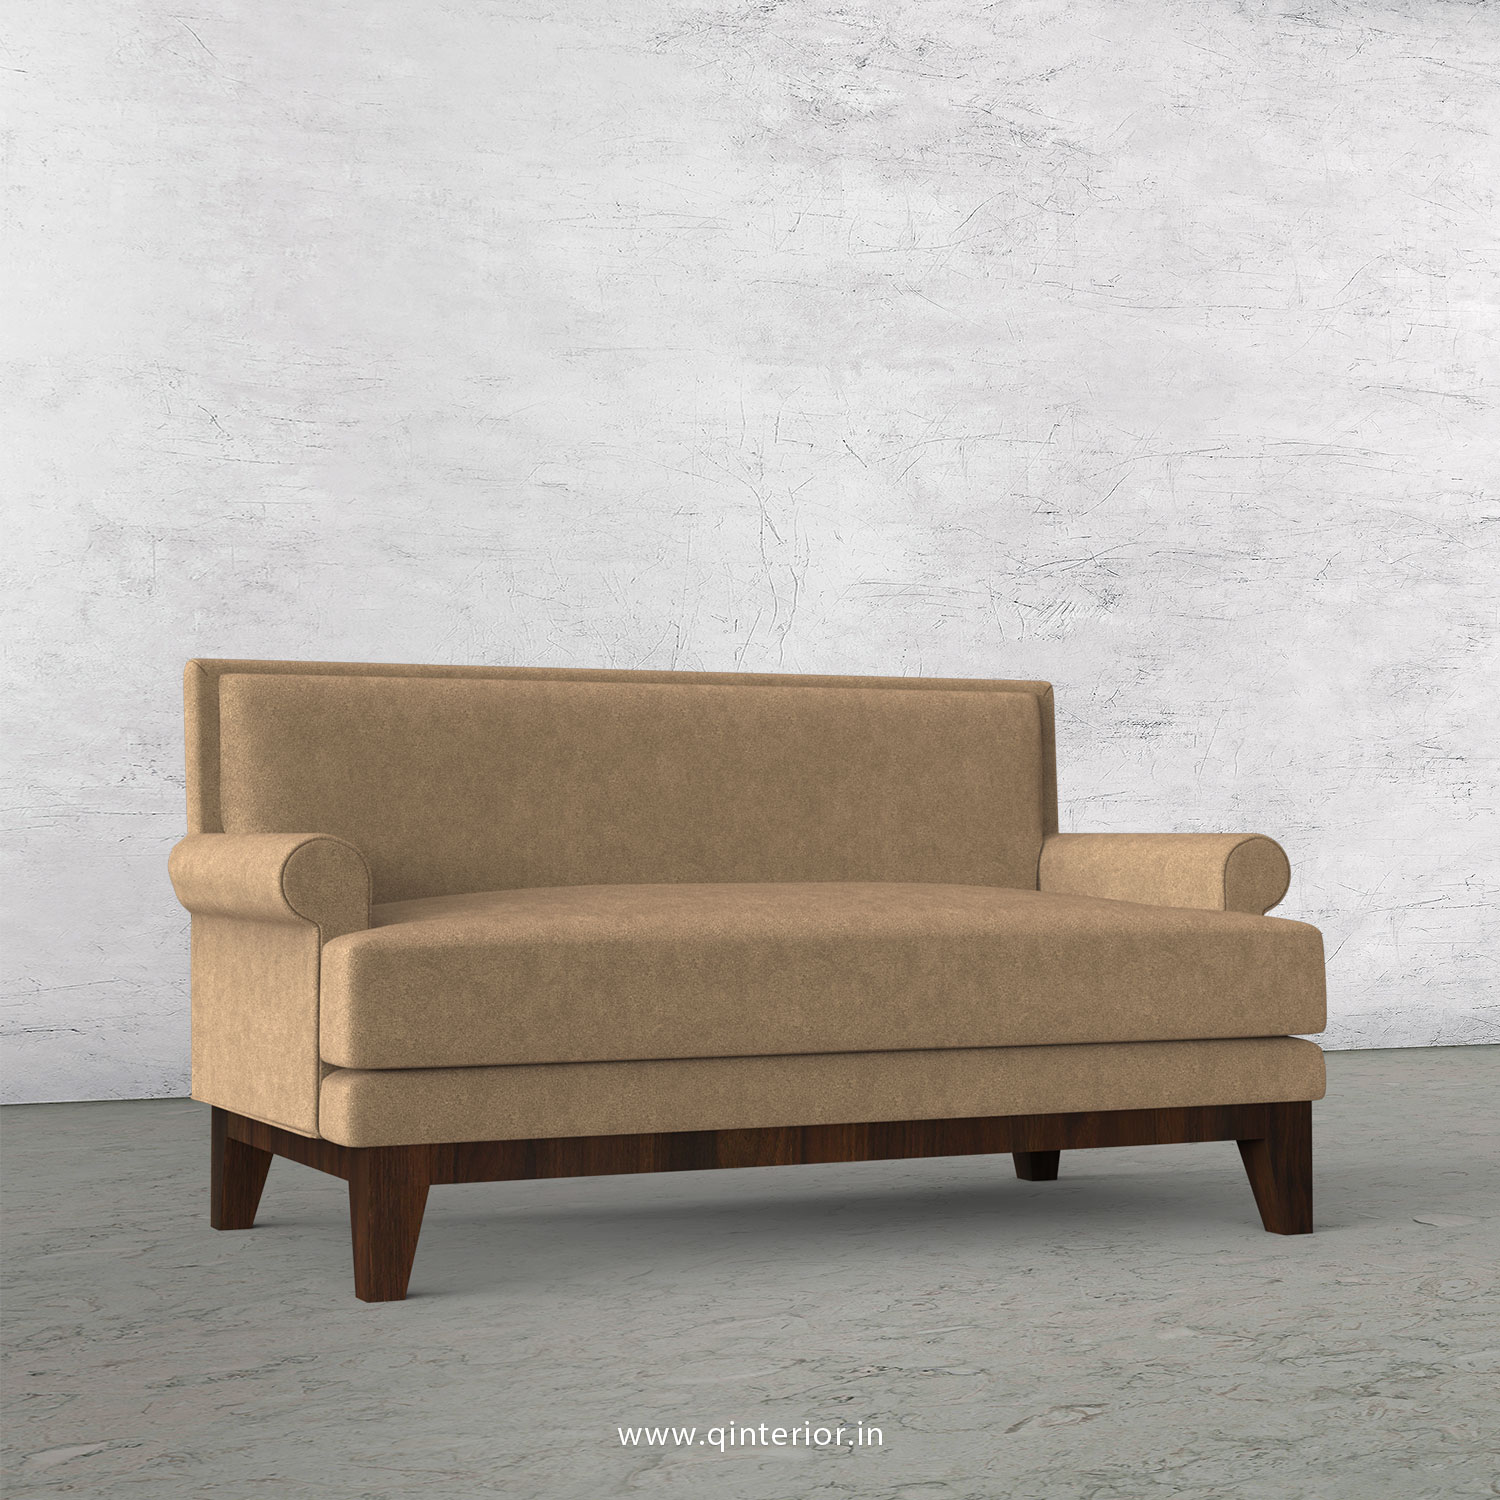 Aviana 2 Seater Sofa in Velvet Fabric - SFA001 VL03